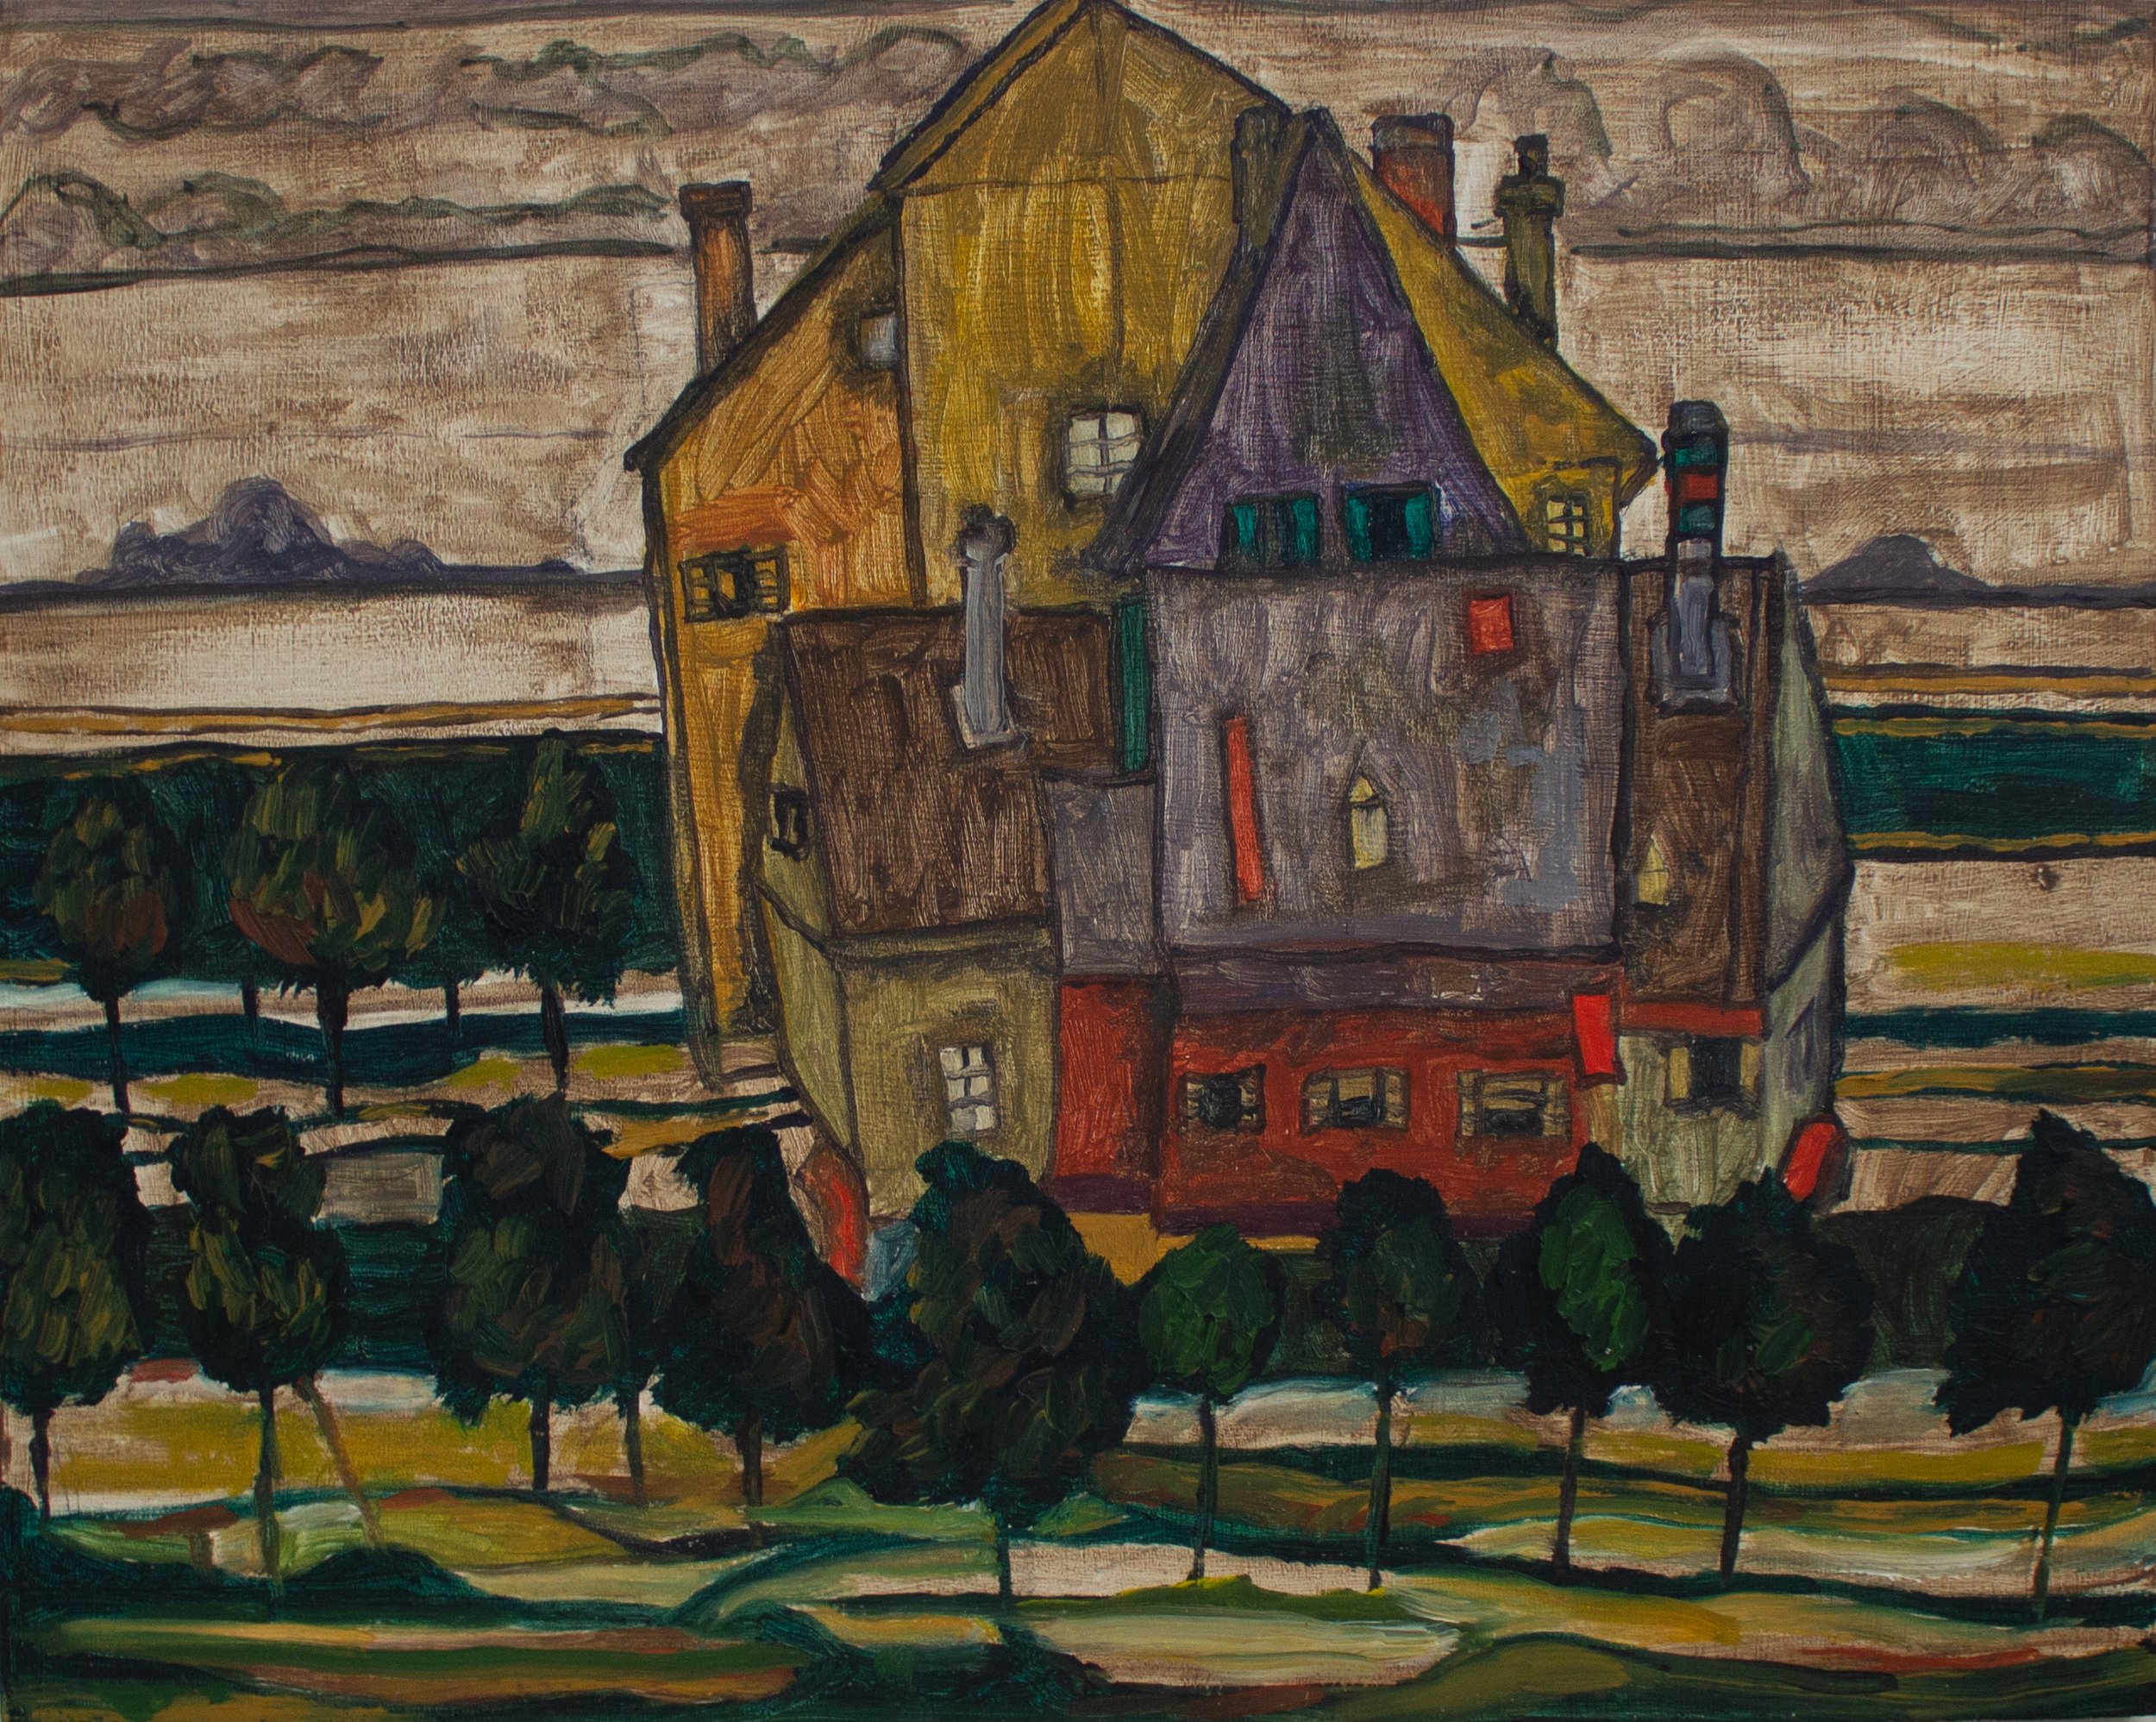 My study of "Einzelne Häuser" by Egon Schiele